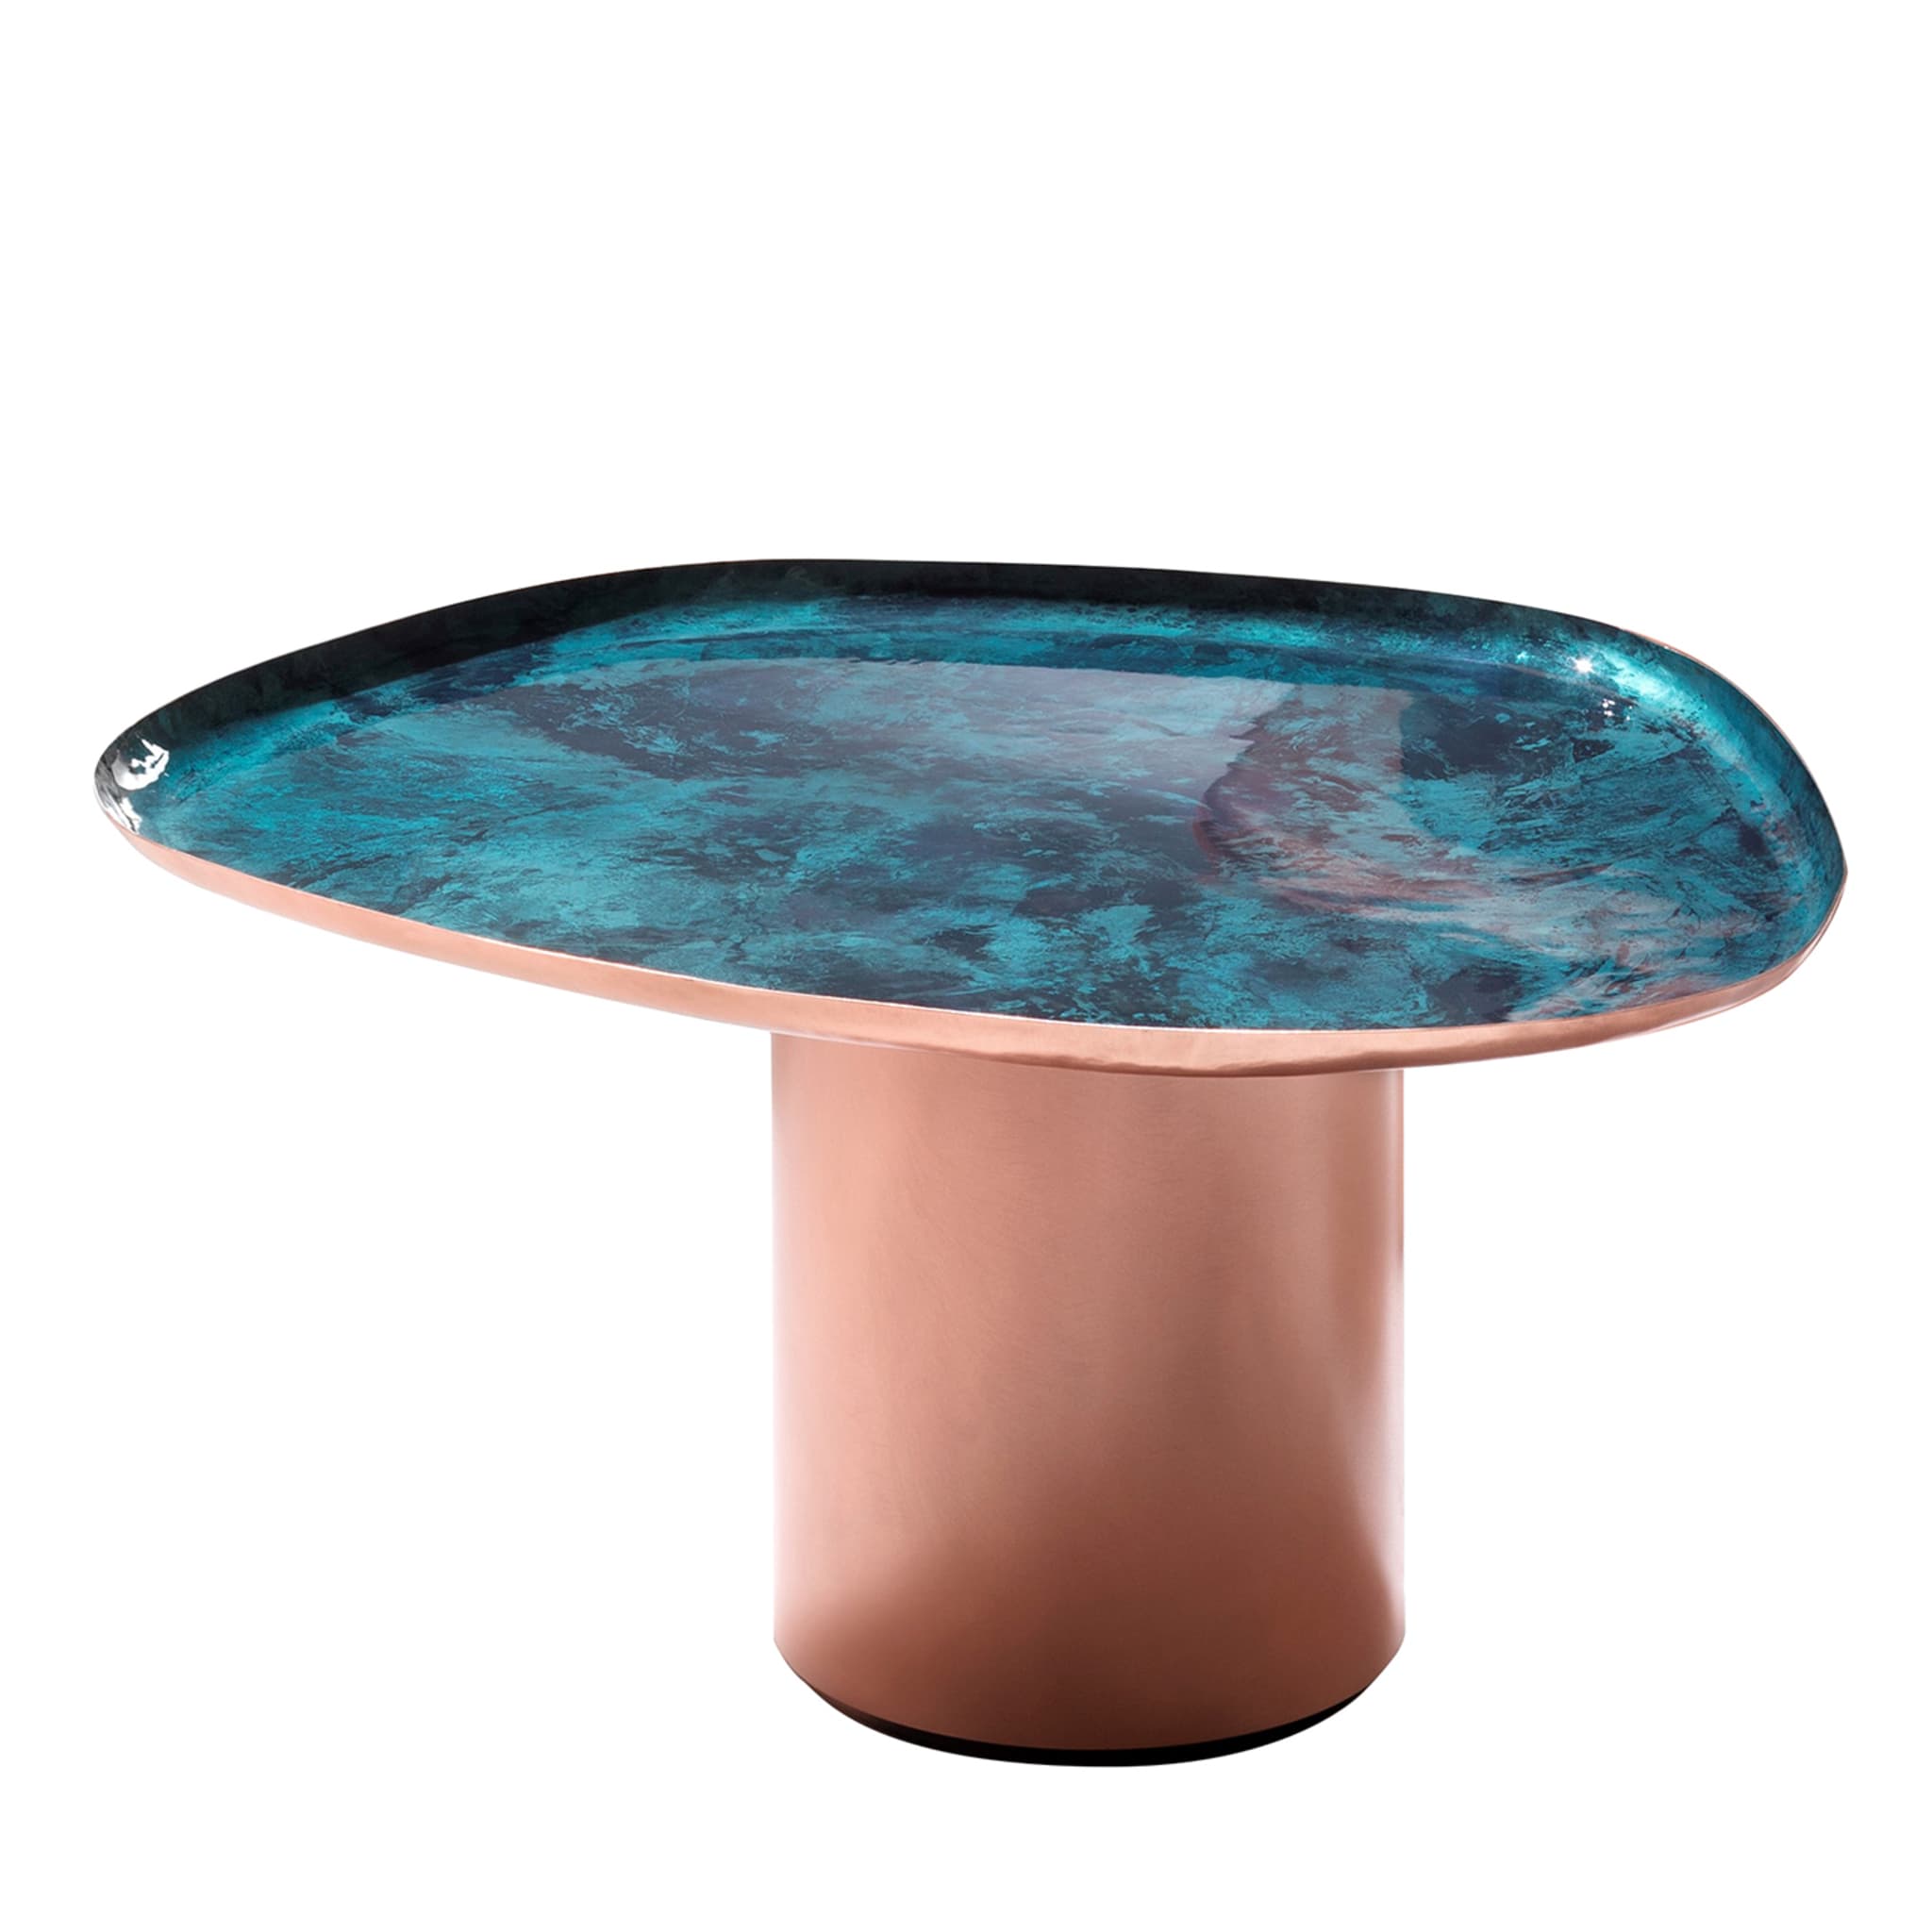 Drops Medium Side Table by Zanellato & Bortotto - Main view